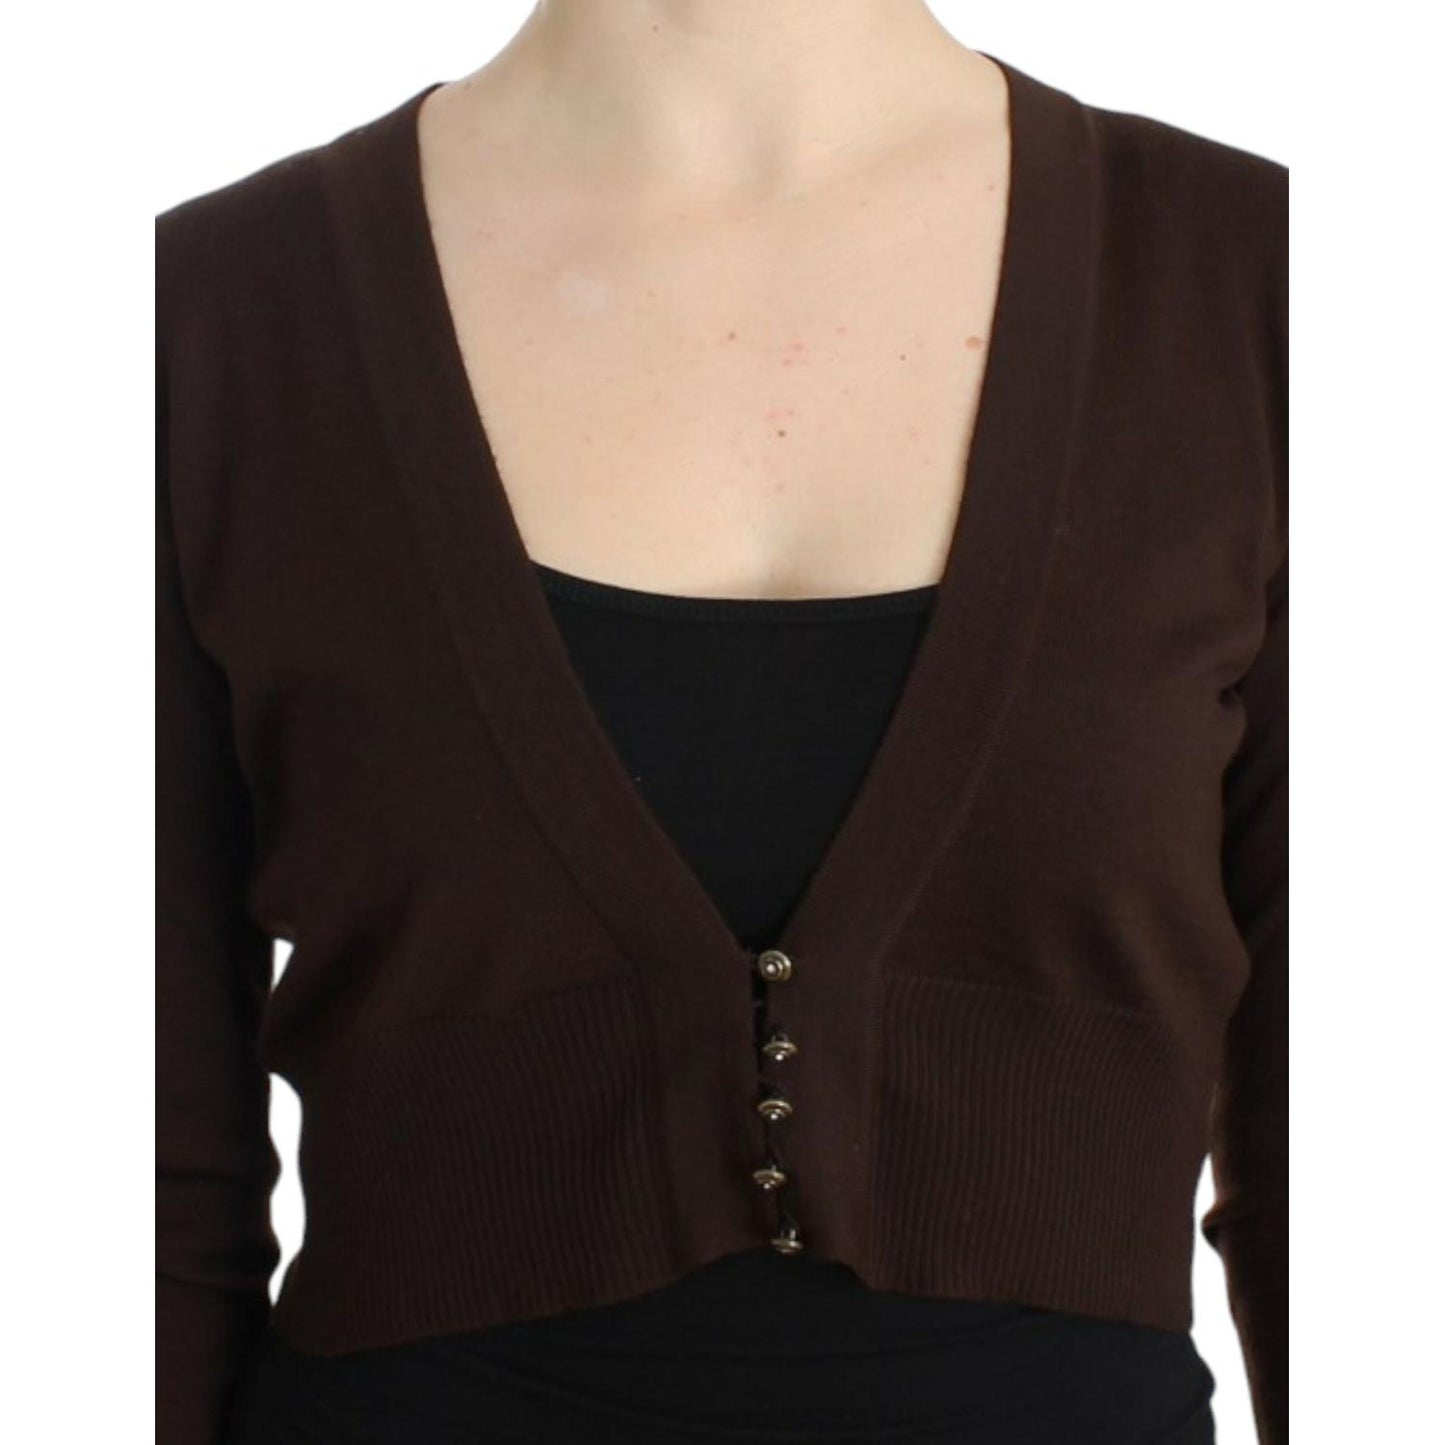 Cavalli Elegant Brown Virgin Wool Cropped Cardigan brown-cropped-wool-cardigan 8983-brown-cropped-wool-cardigan-4-scaled-577332ef-3d6.jpg